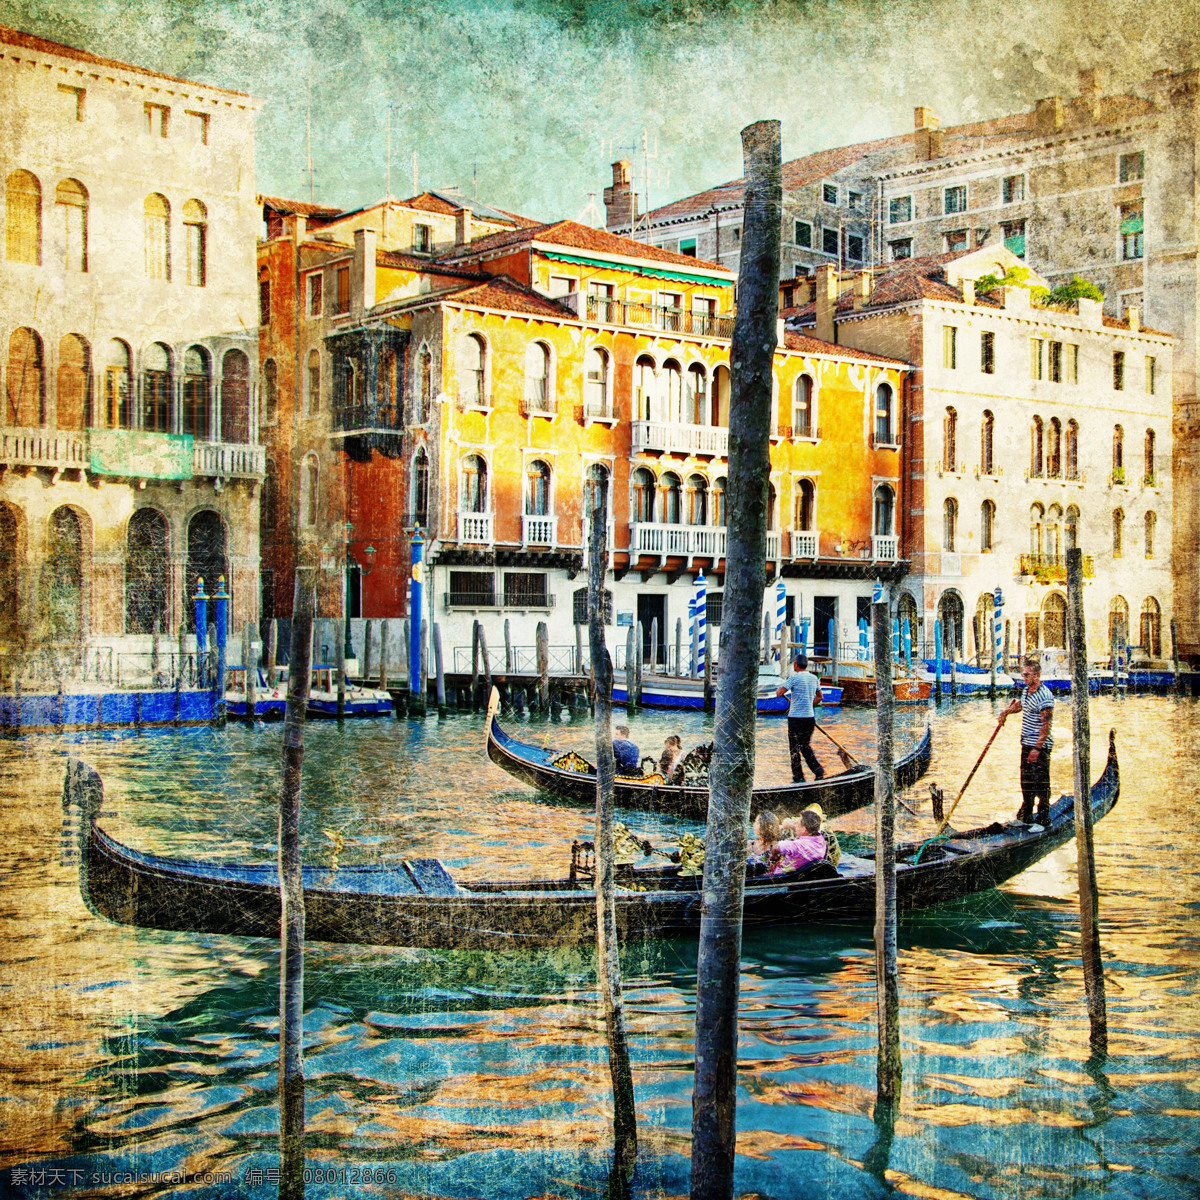 威尼斯 风景 照片 小船 威尼斯风景 水城威尼斯 意大利 旅游景点 美丽风景 怀旧 城市 相片 怀旧风景照片 城市风光 环境家居